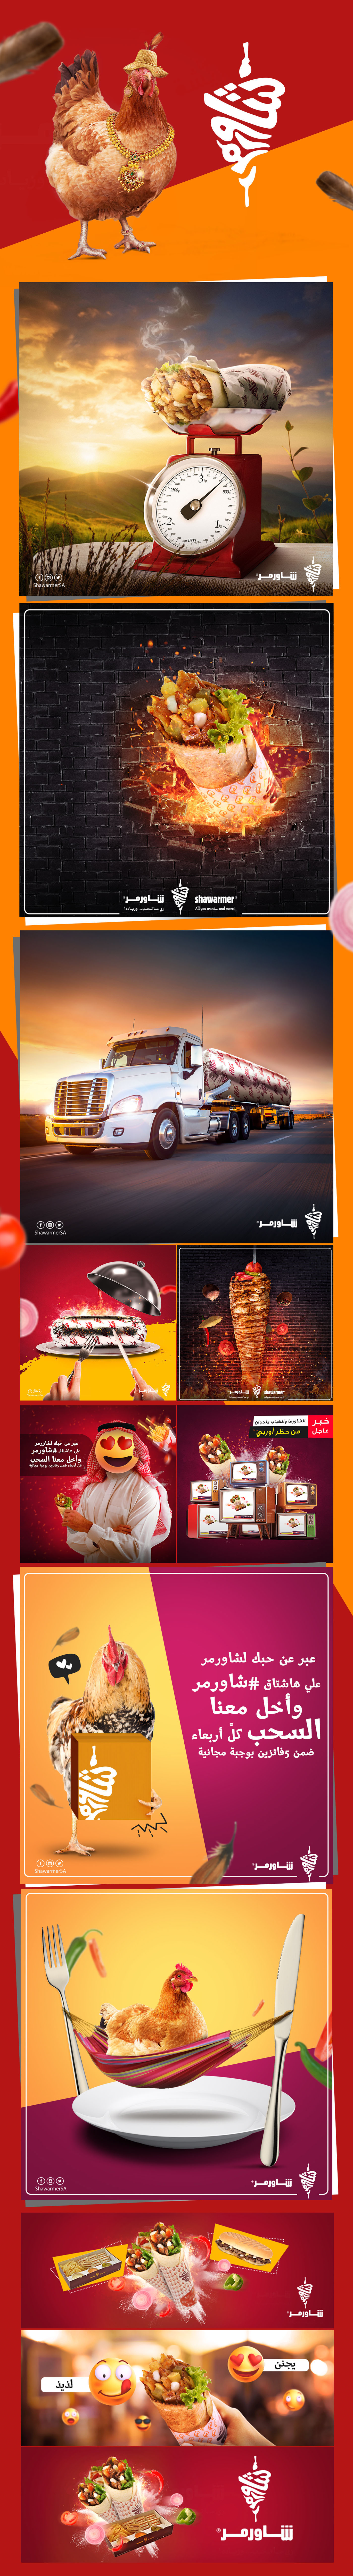 Tree  Food  creative social media hen ads KSA